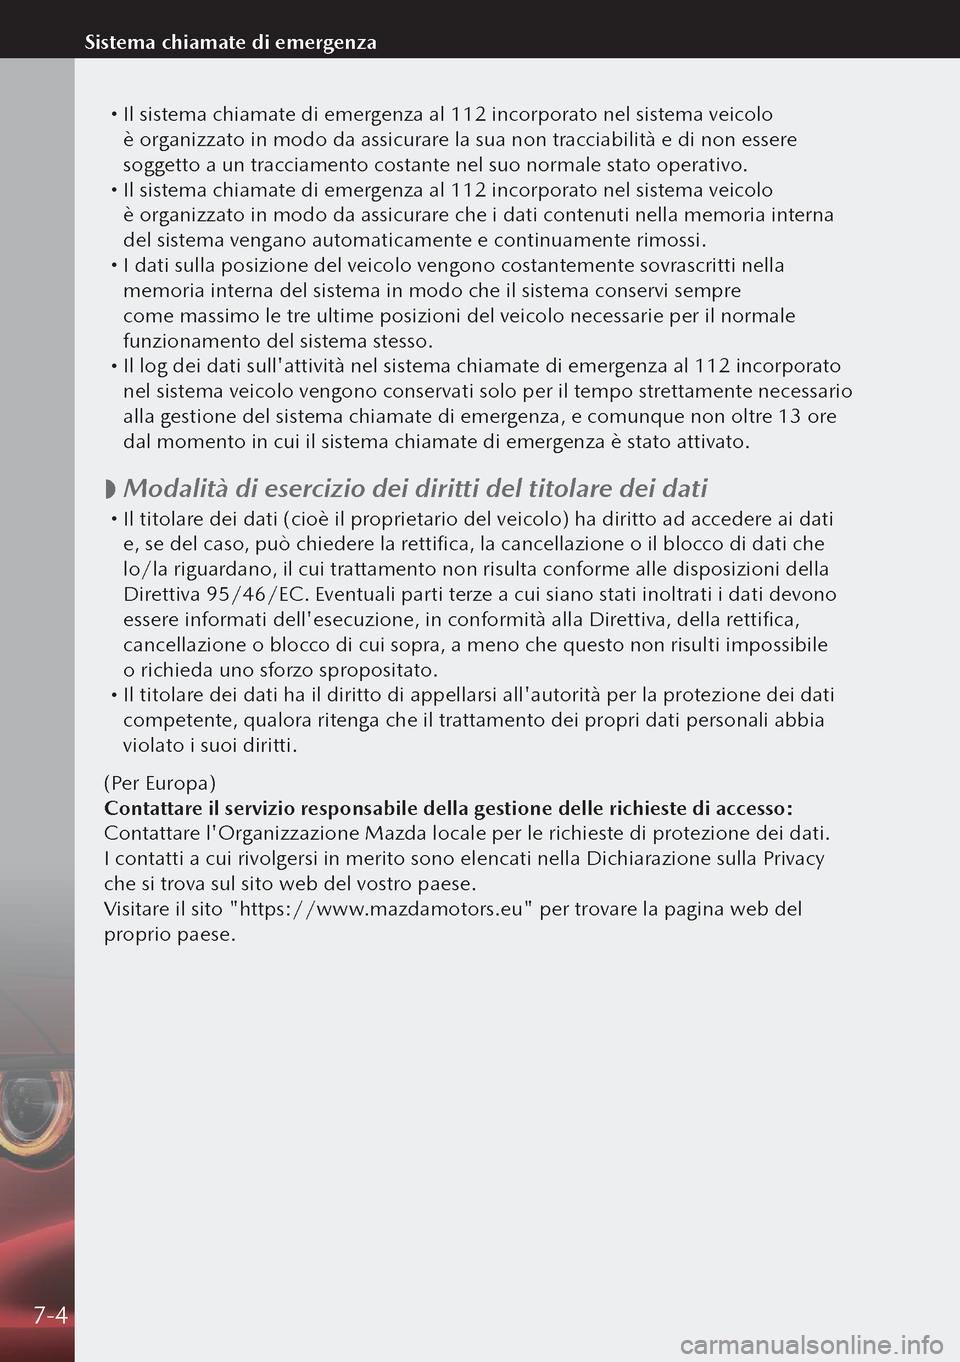 MAZDA MODEL 3 HATCHBACK 2019  Manuale del proprietario (in Italian)  Il sistema chiamate di emergenza al 112 incorporato nel sistema veicolo 
è organizzato in modo da assicurare la sua non tracciabilità e di non essere 
soggetto a un tracciamento costante nel su